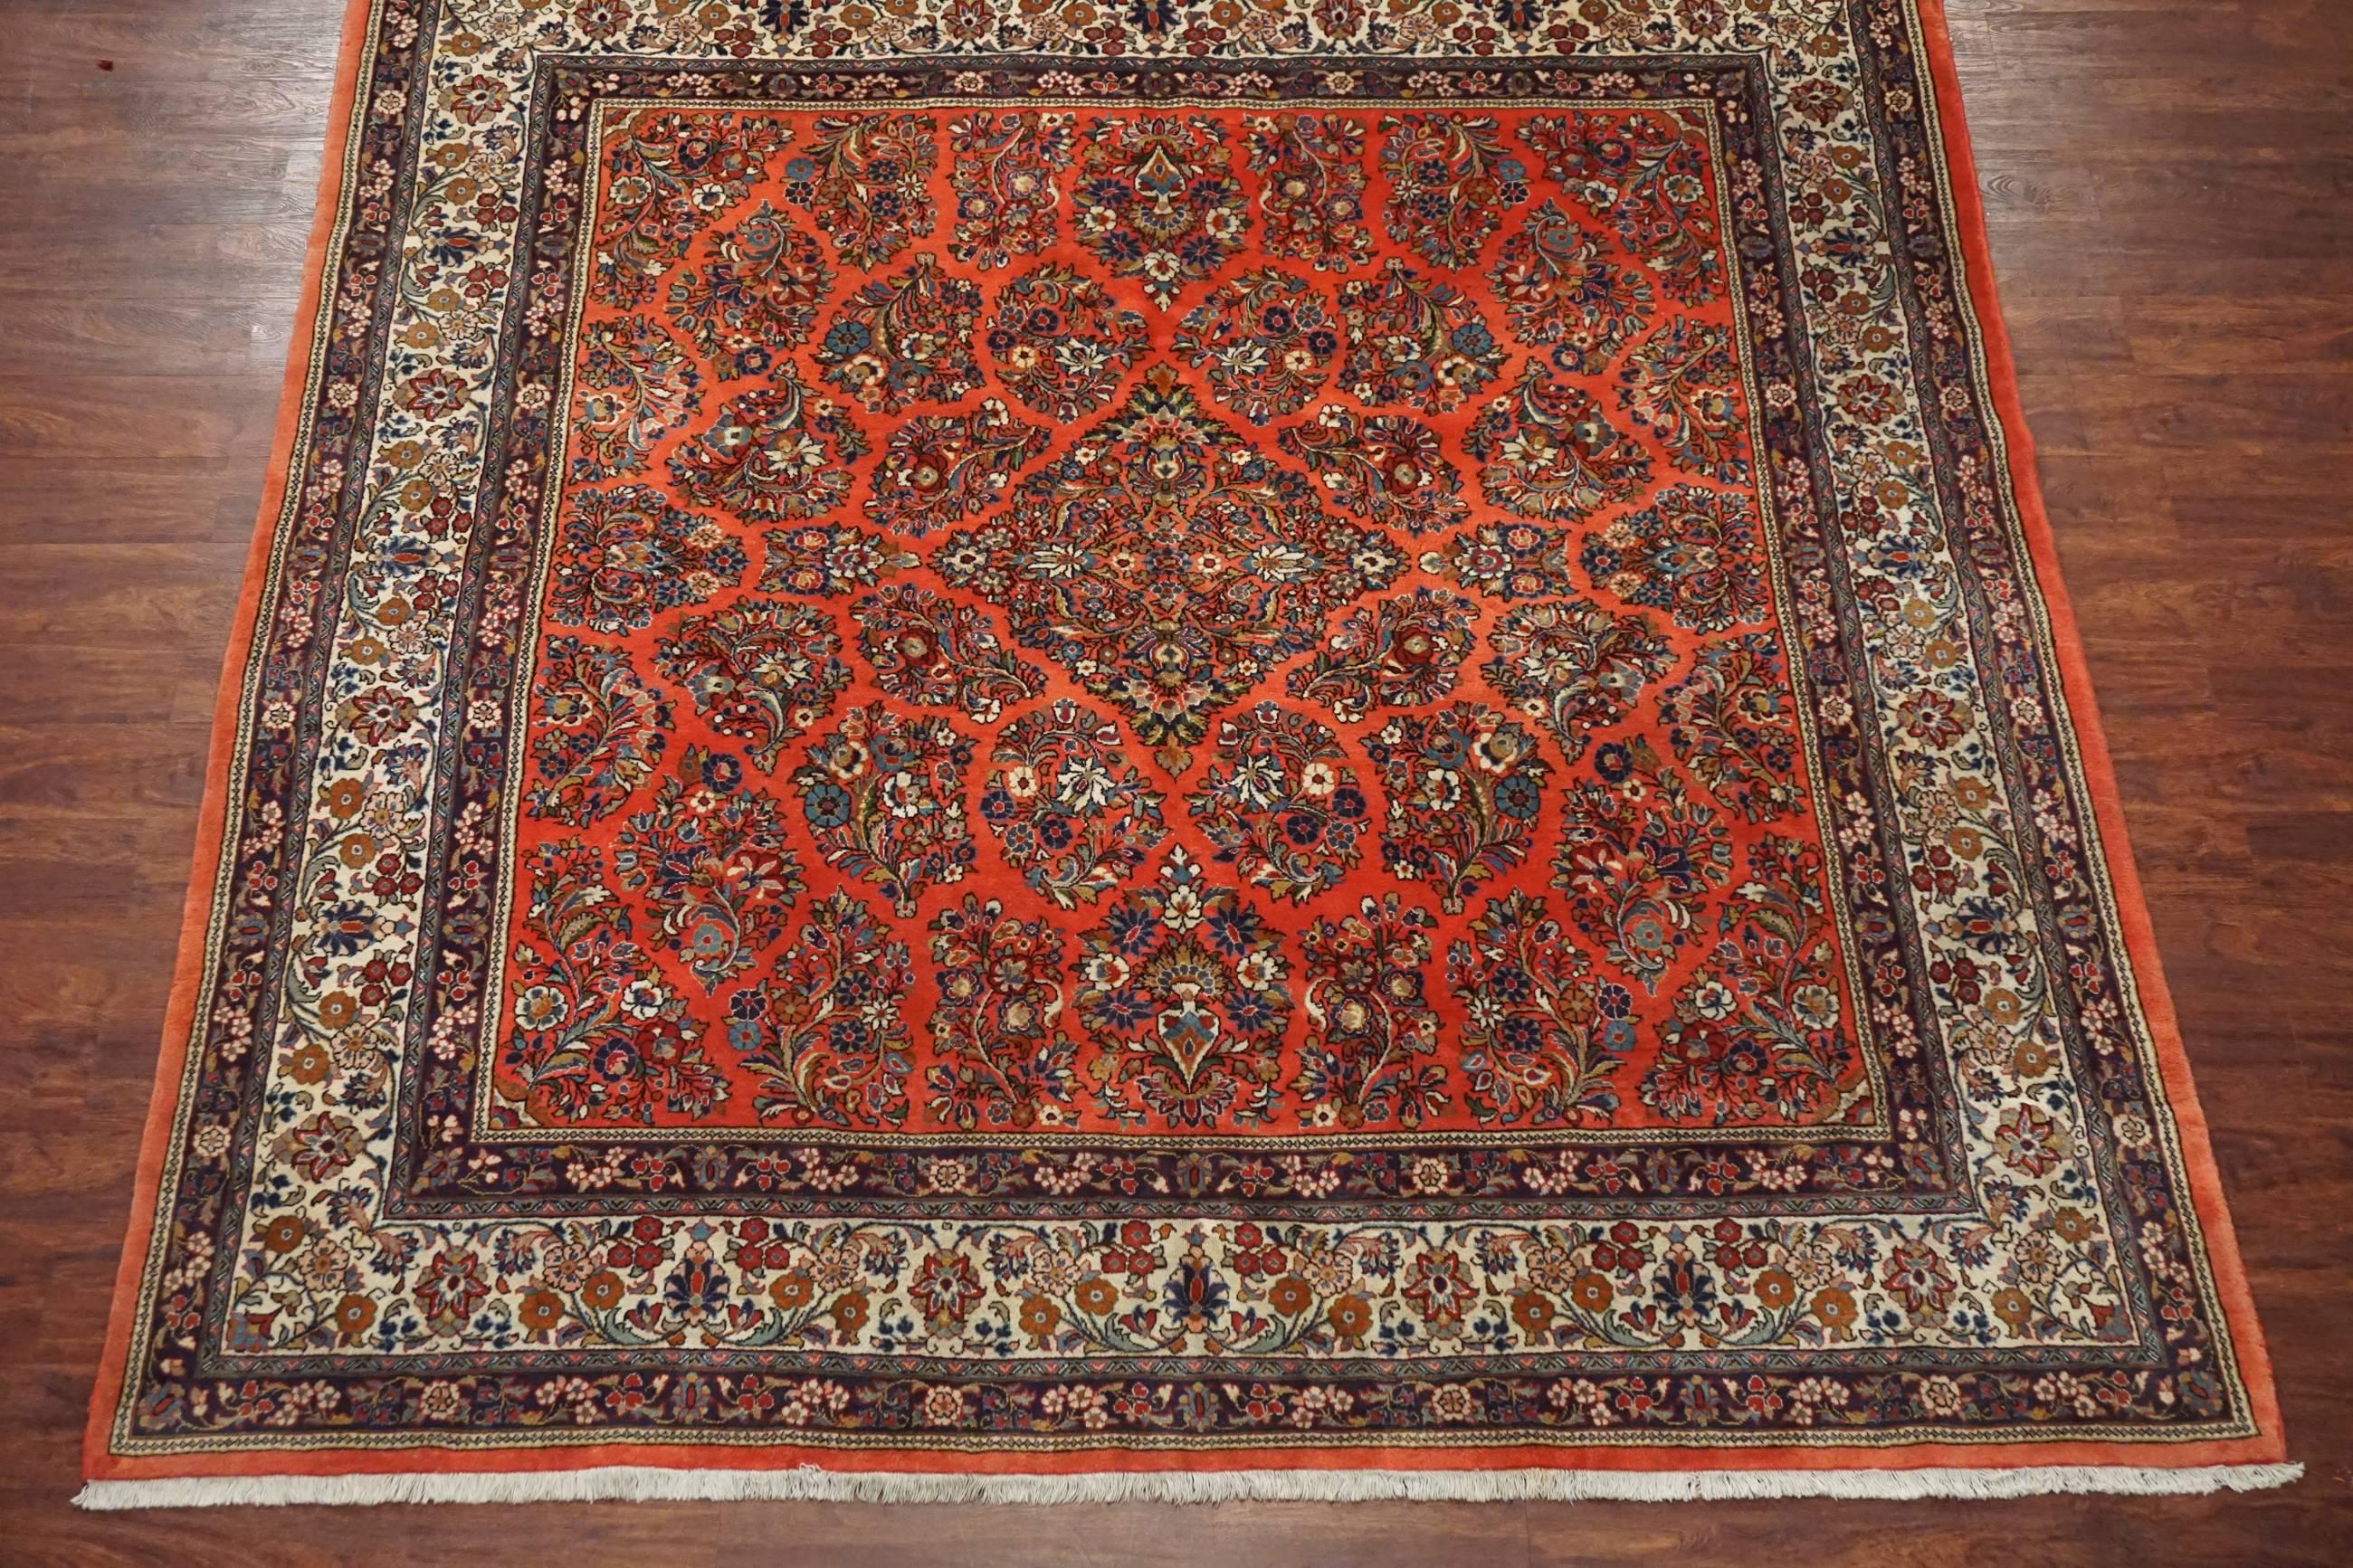 Square antique persian sarouk rug,

circa 1930

8' 2